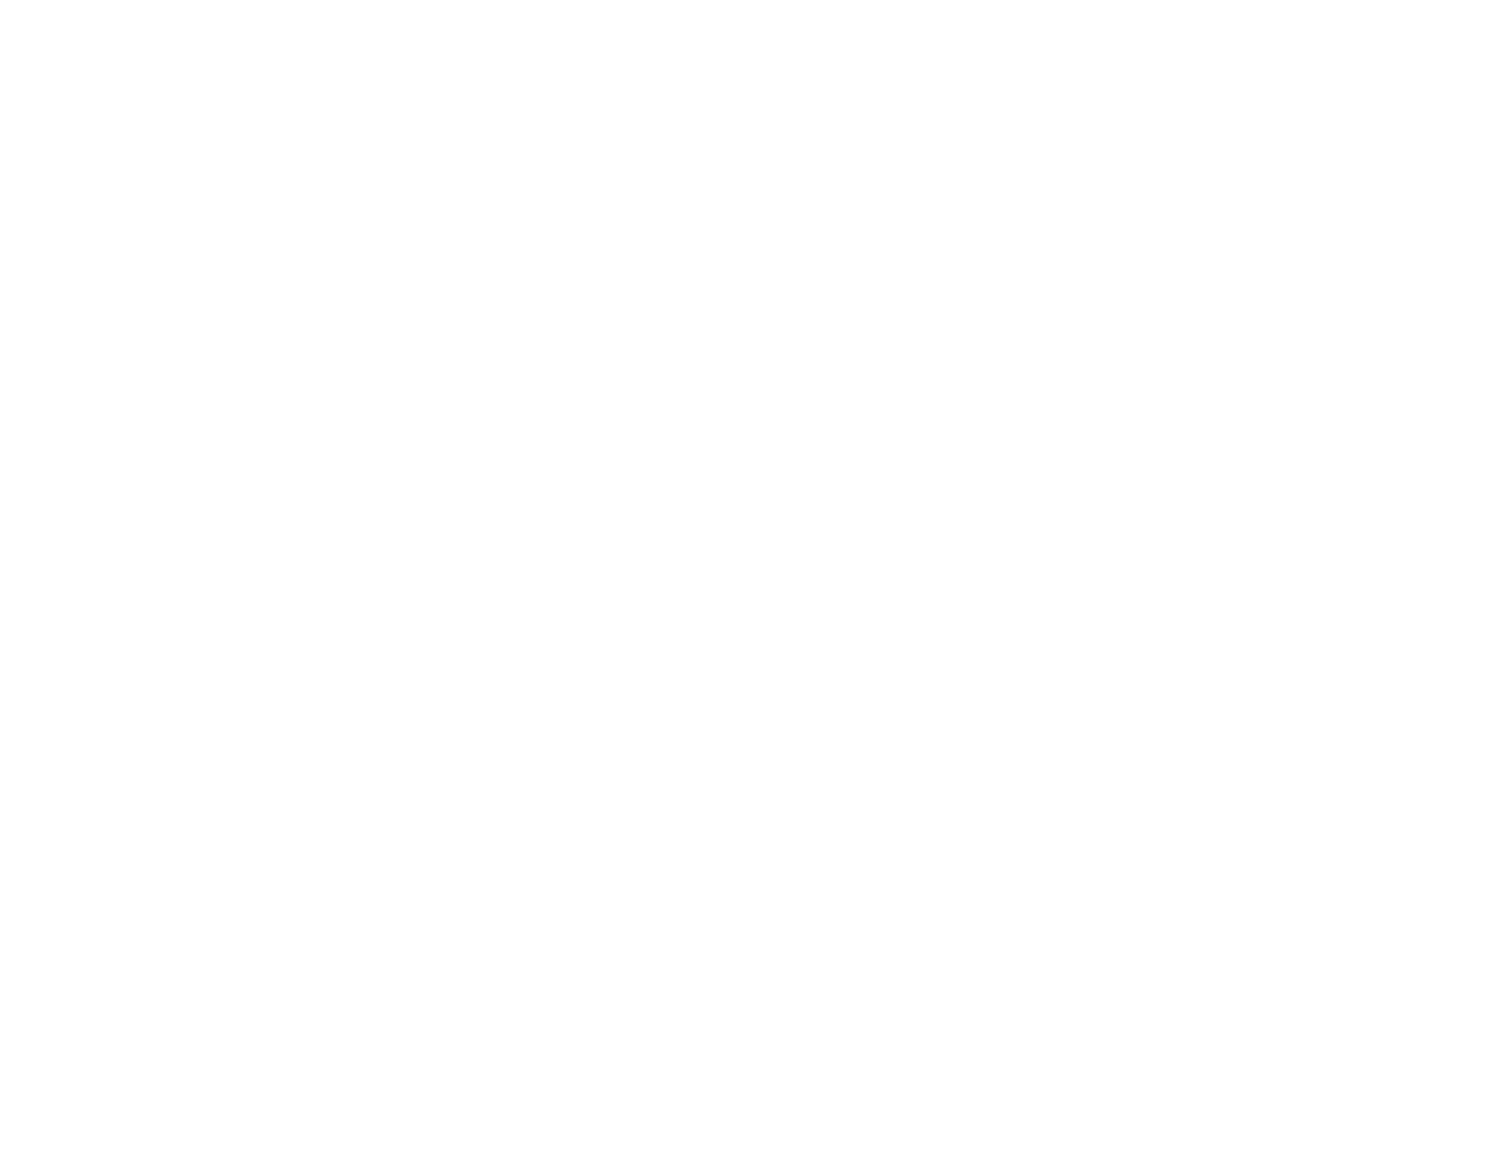 Taboola.com logo for dark backgrounds (transparent PNG)